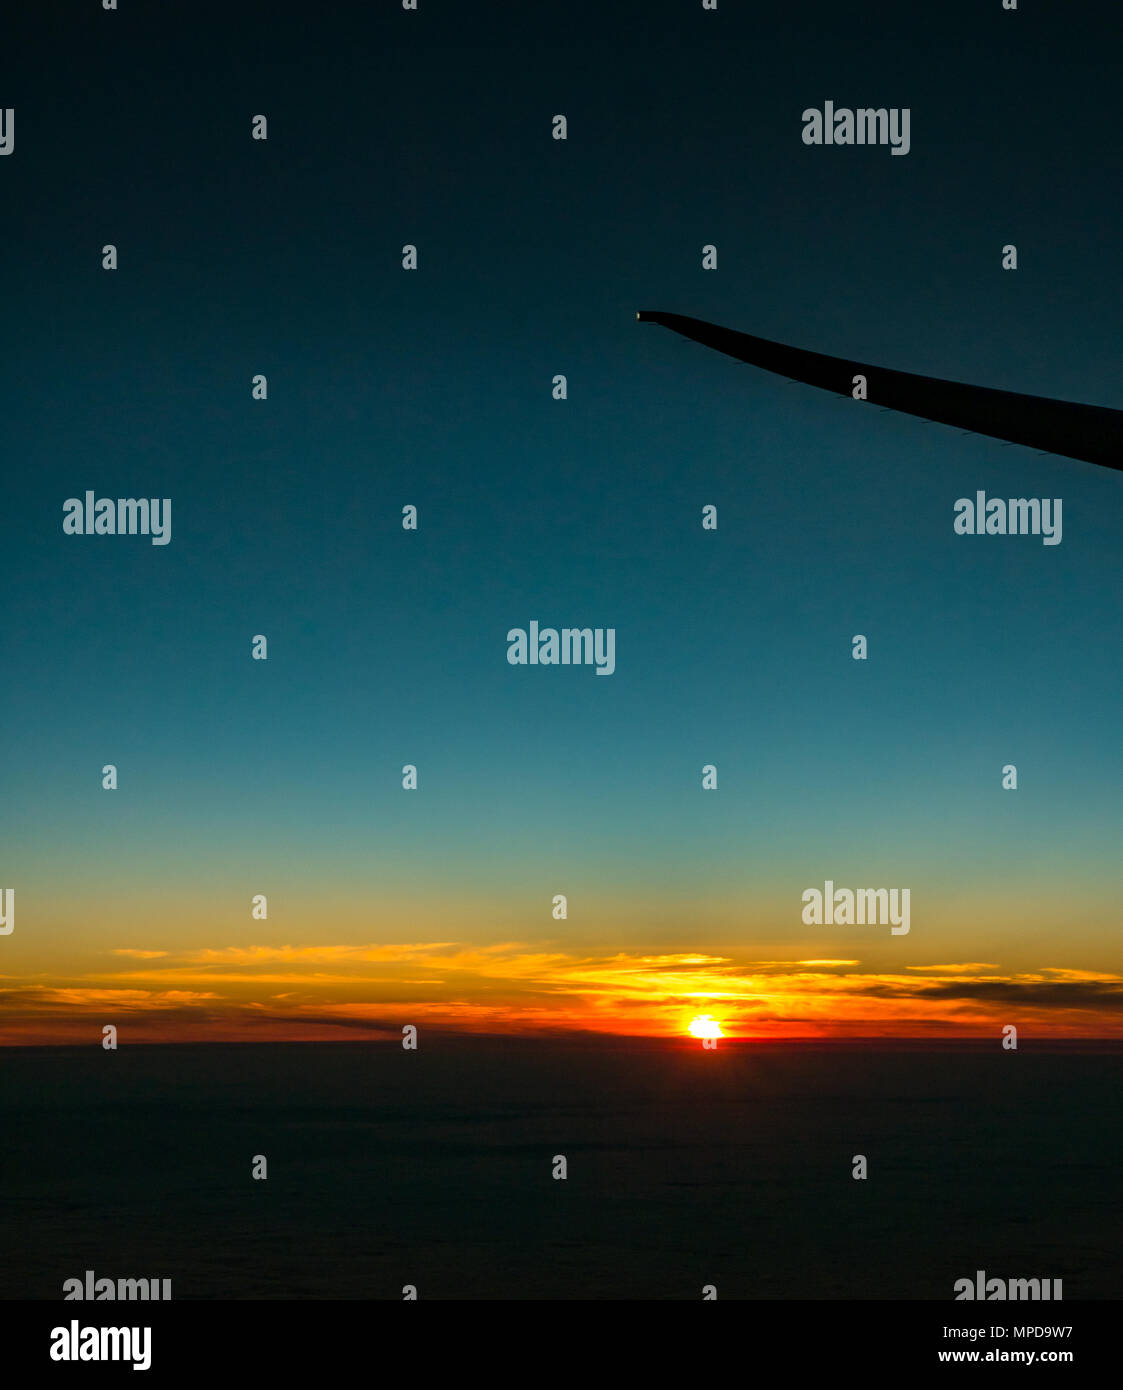 Orange Sonnenuntergang mit klaren blauen Himmel und Horizont, aus dem Flugzeug Fenster, mit einem Flugzeugflügel tipp Silhouette, von Heathro, London, UK Stockfoto